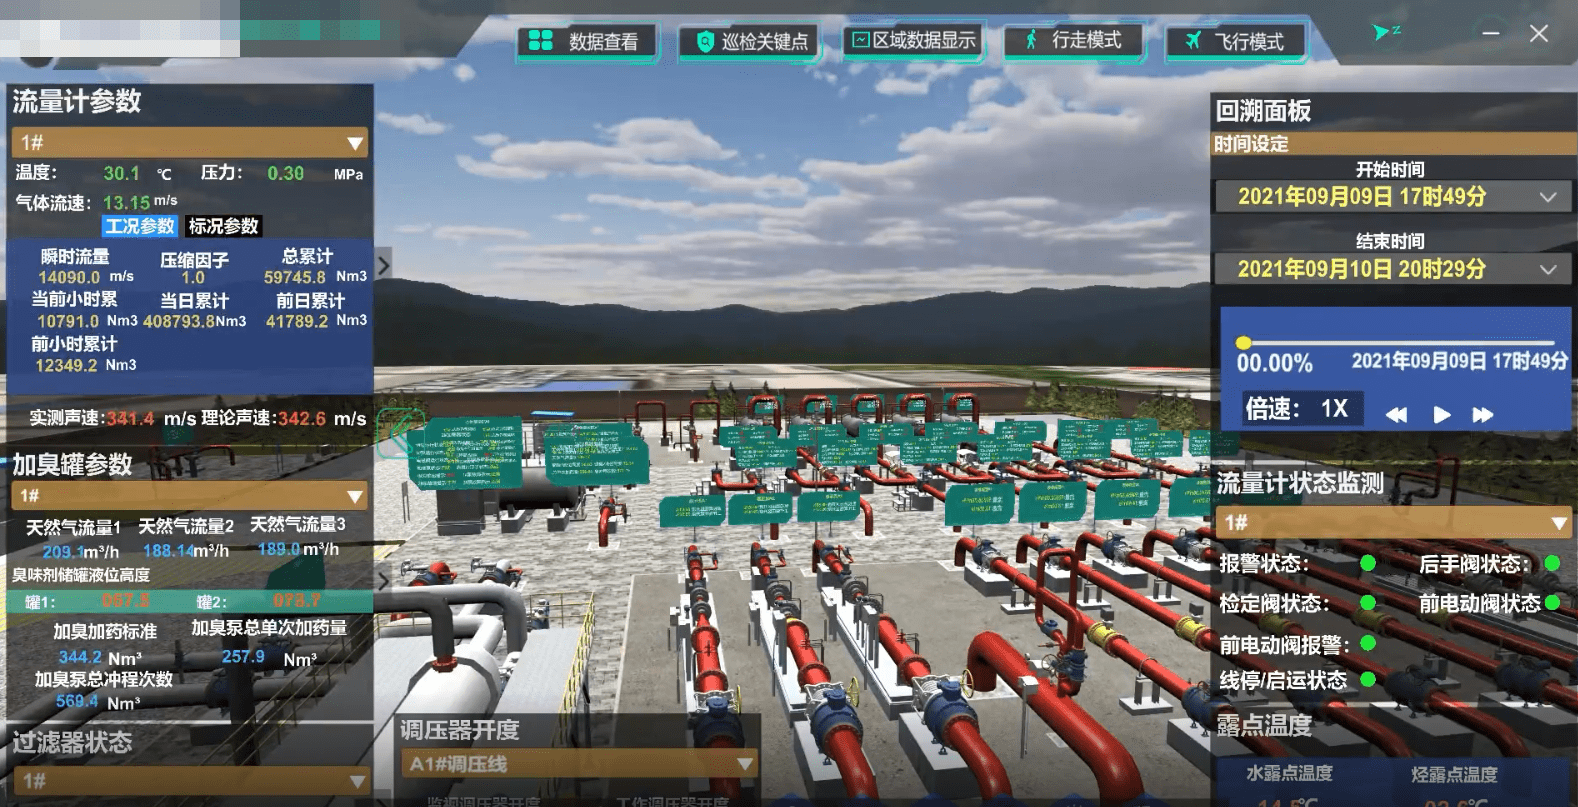 数字孪生 – 智慧燃气场站三维可视化运营系统解决方案-燃气场站工艺流程图1